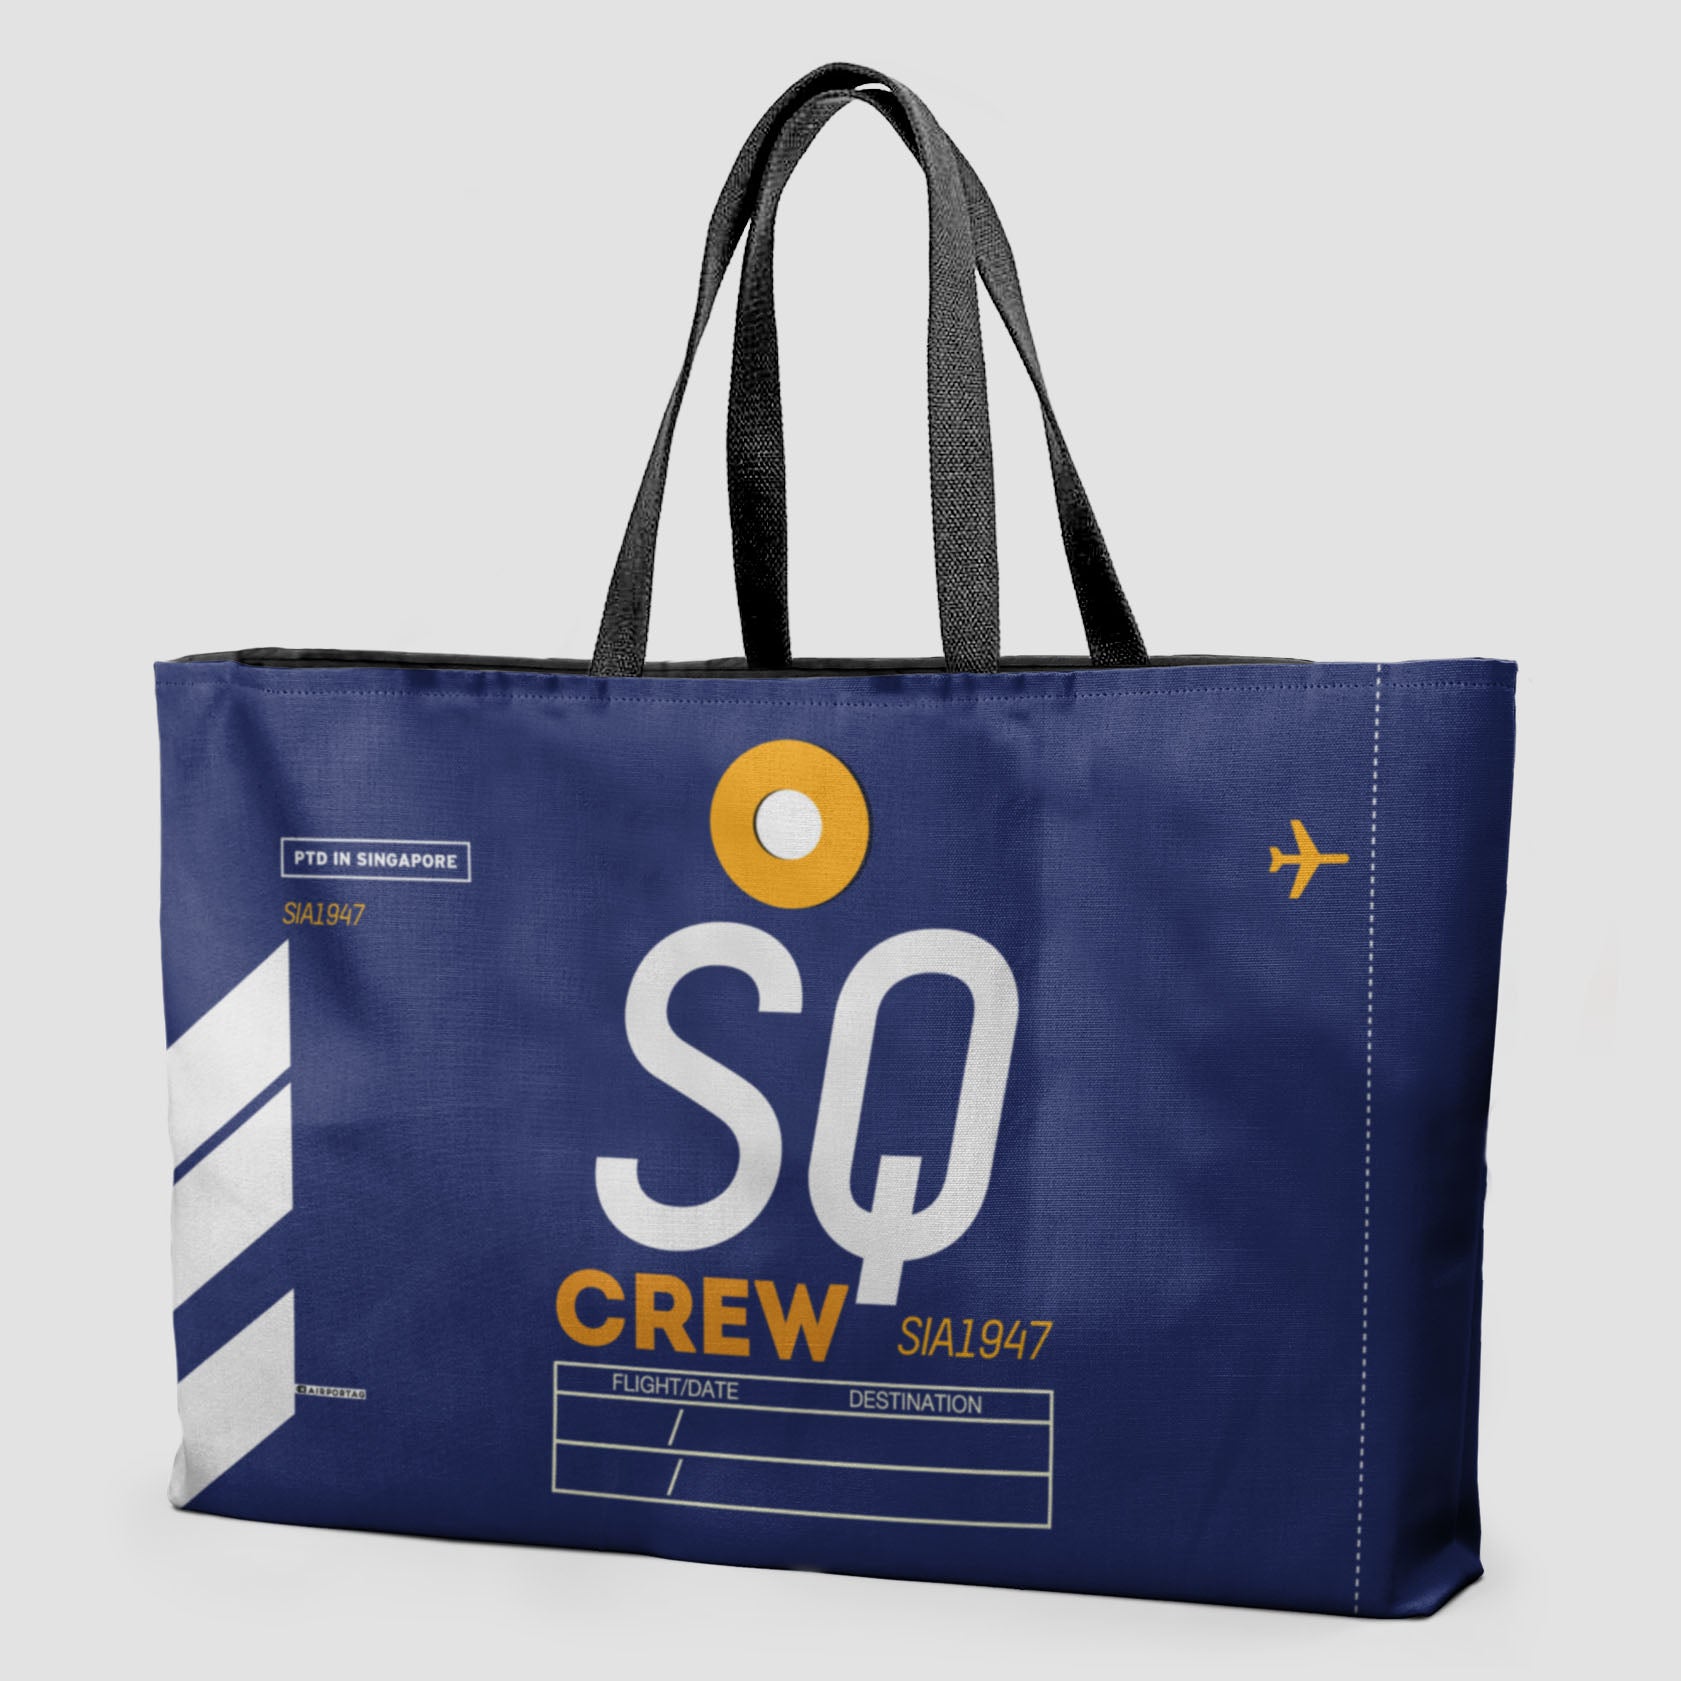 SQ - Weekender Bag - Airportag